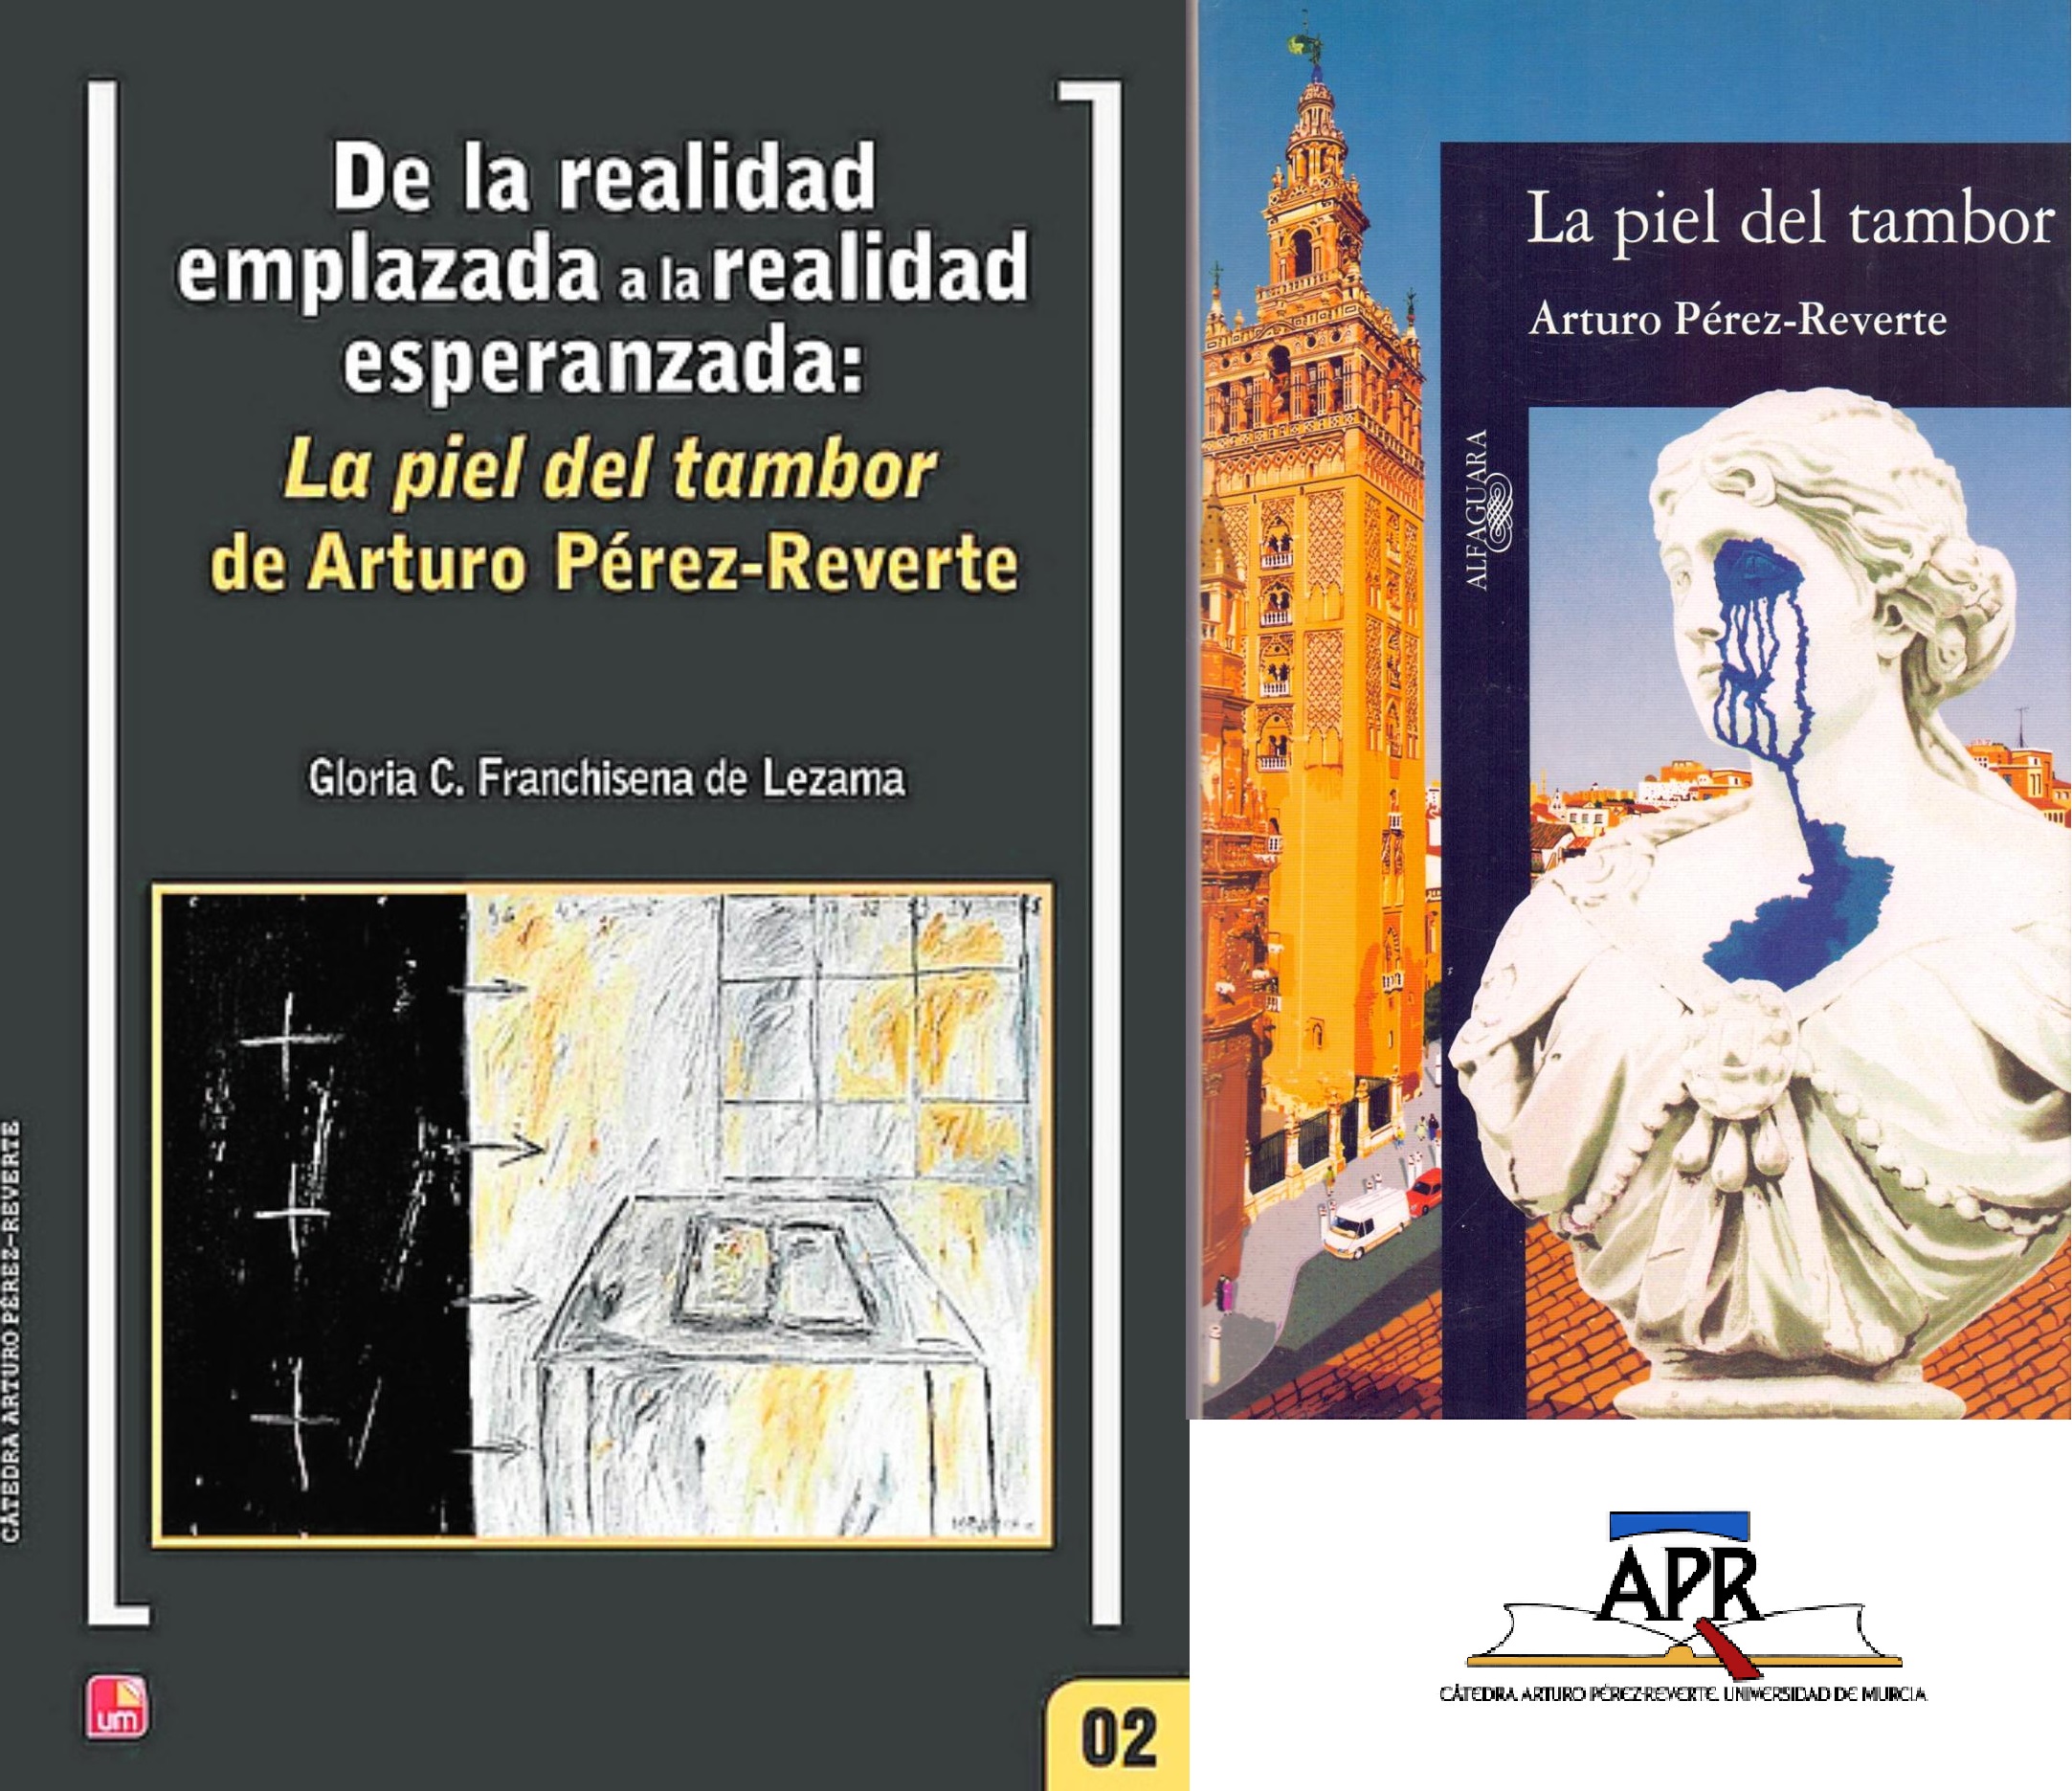 «De la realidad emplazada a la realidad esperanzada en ‘La piel del tambor’ de Arturo Pérez-Reverte»